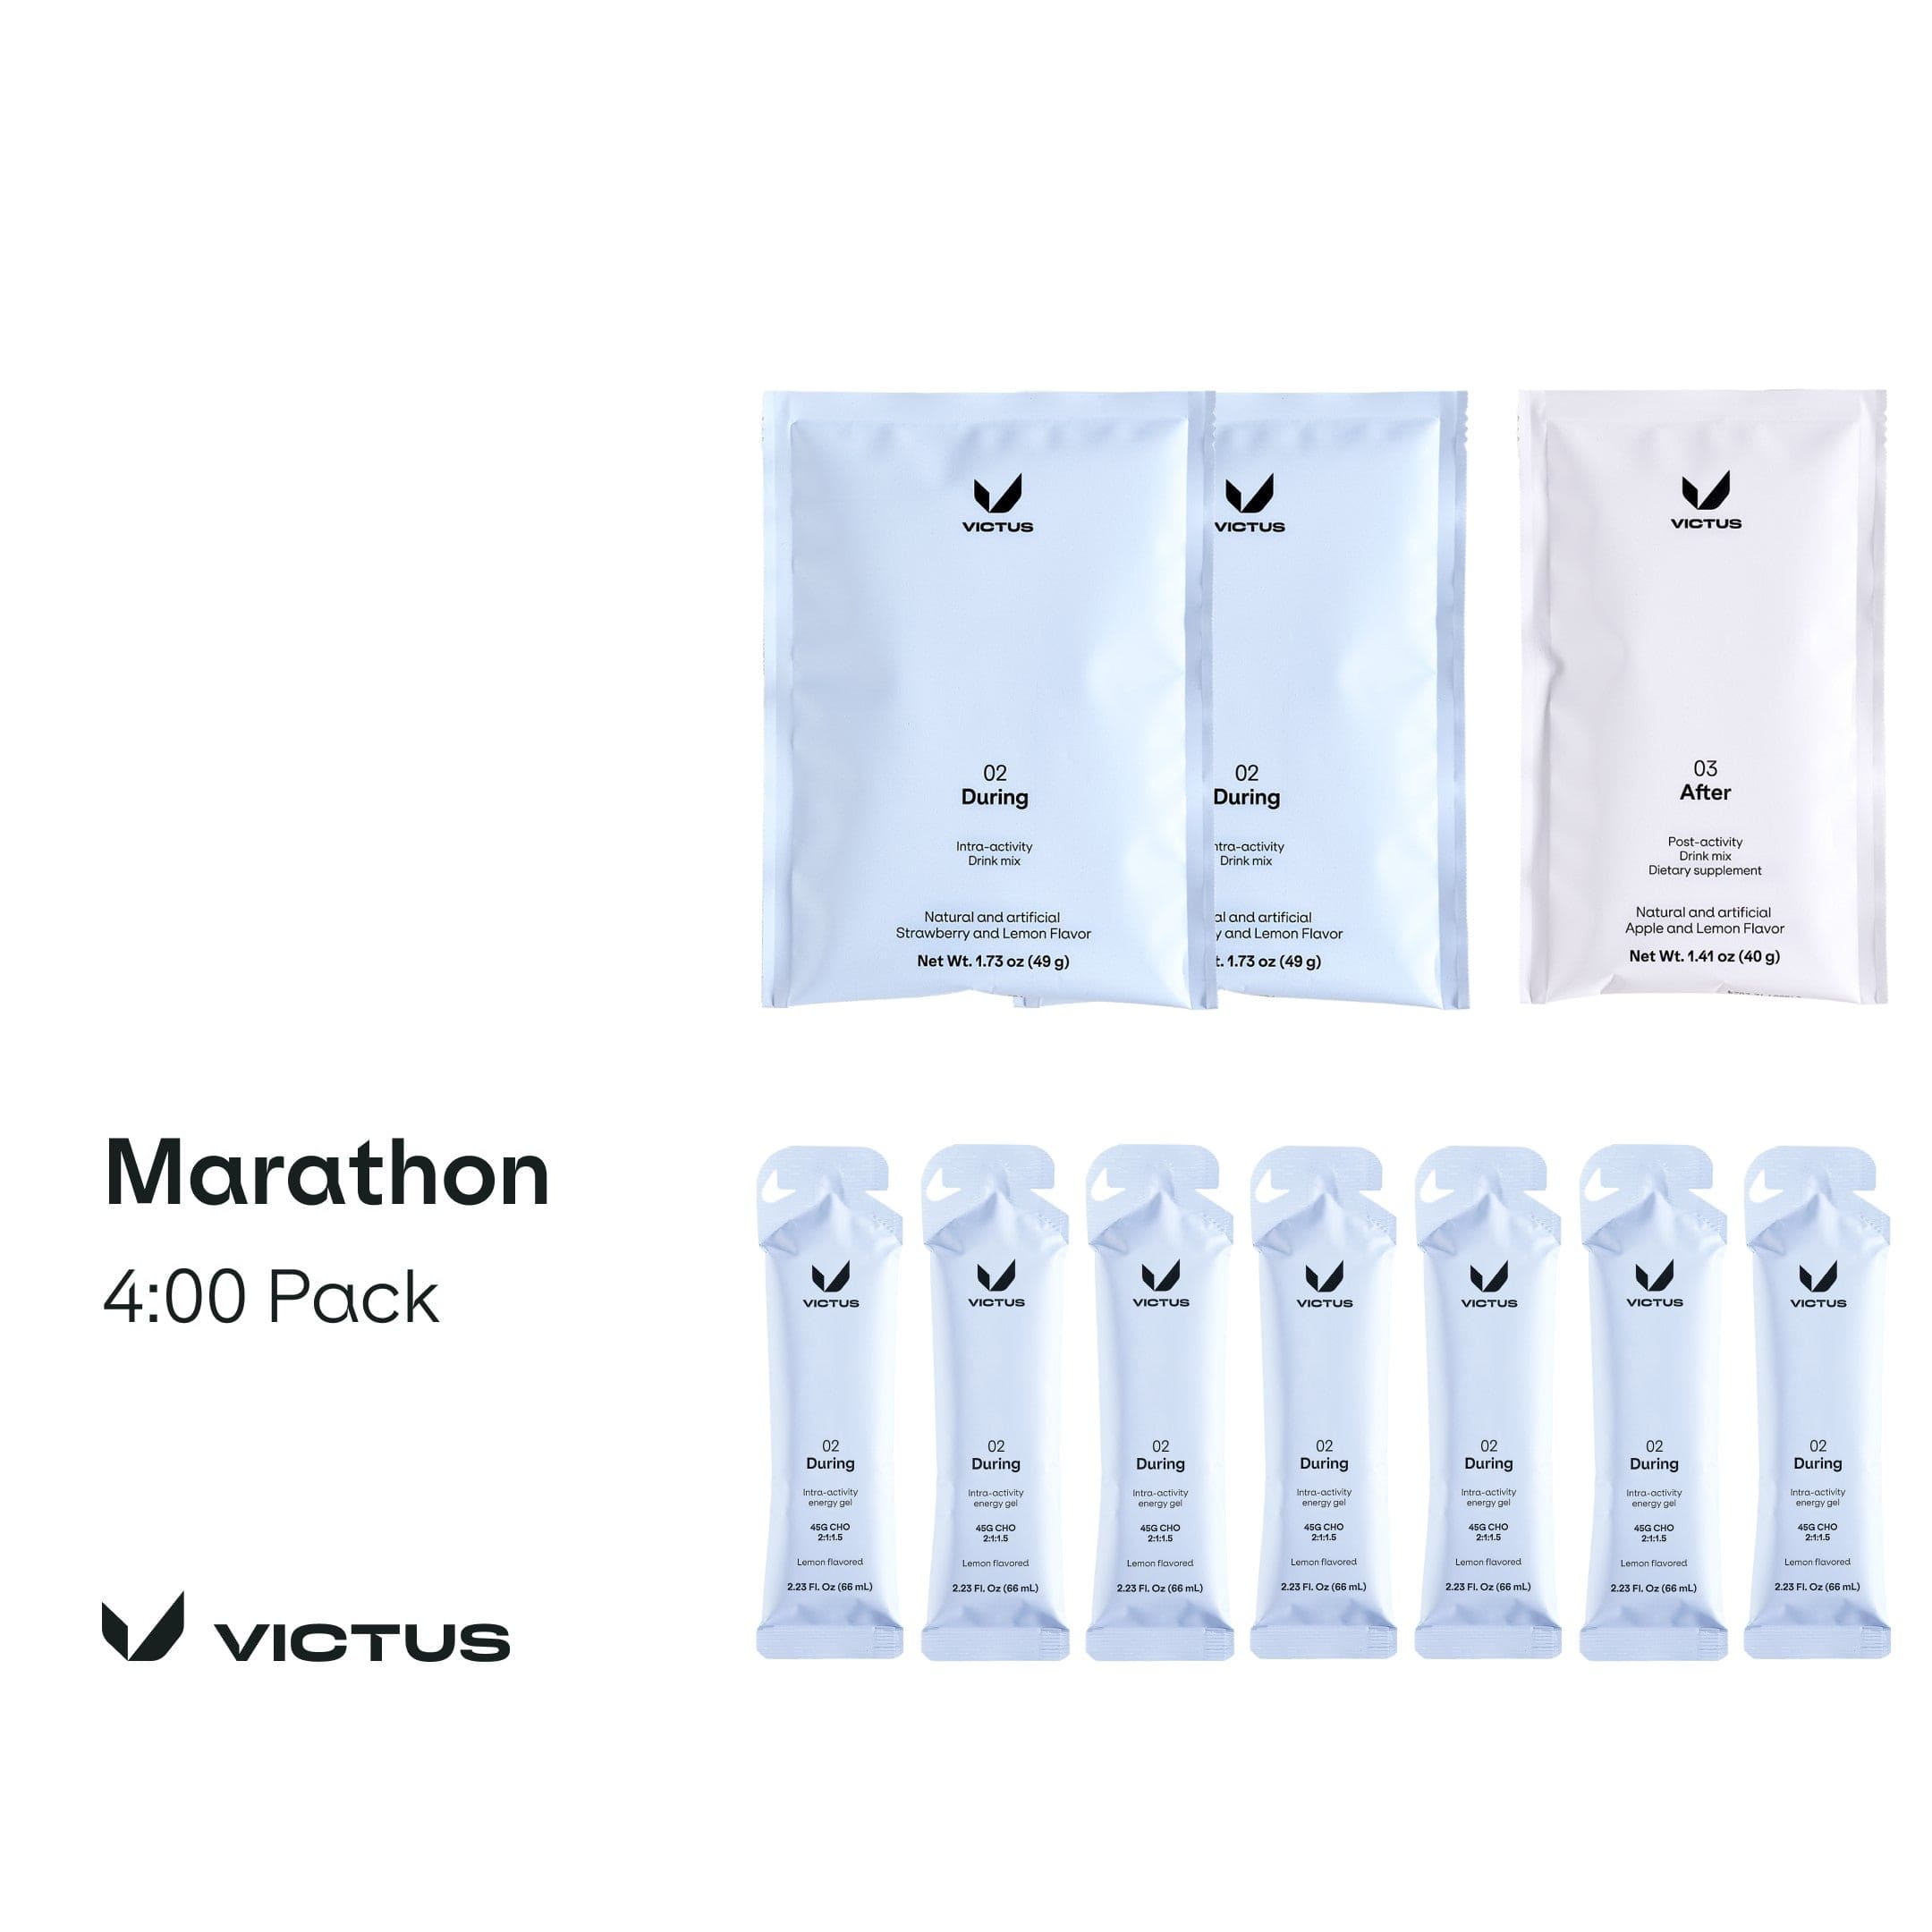 Victus Trial Pack 4:00 Pack Marathon Pack XMiles